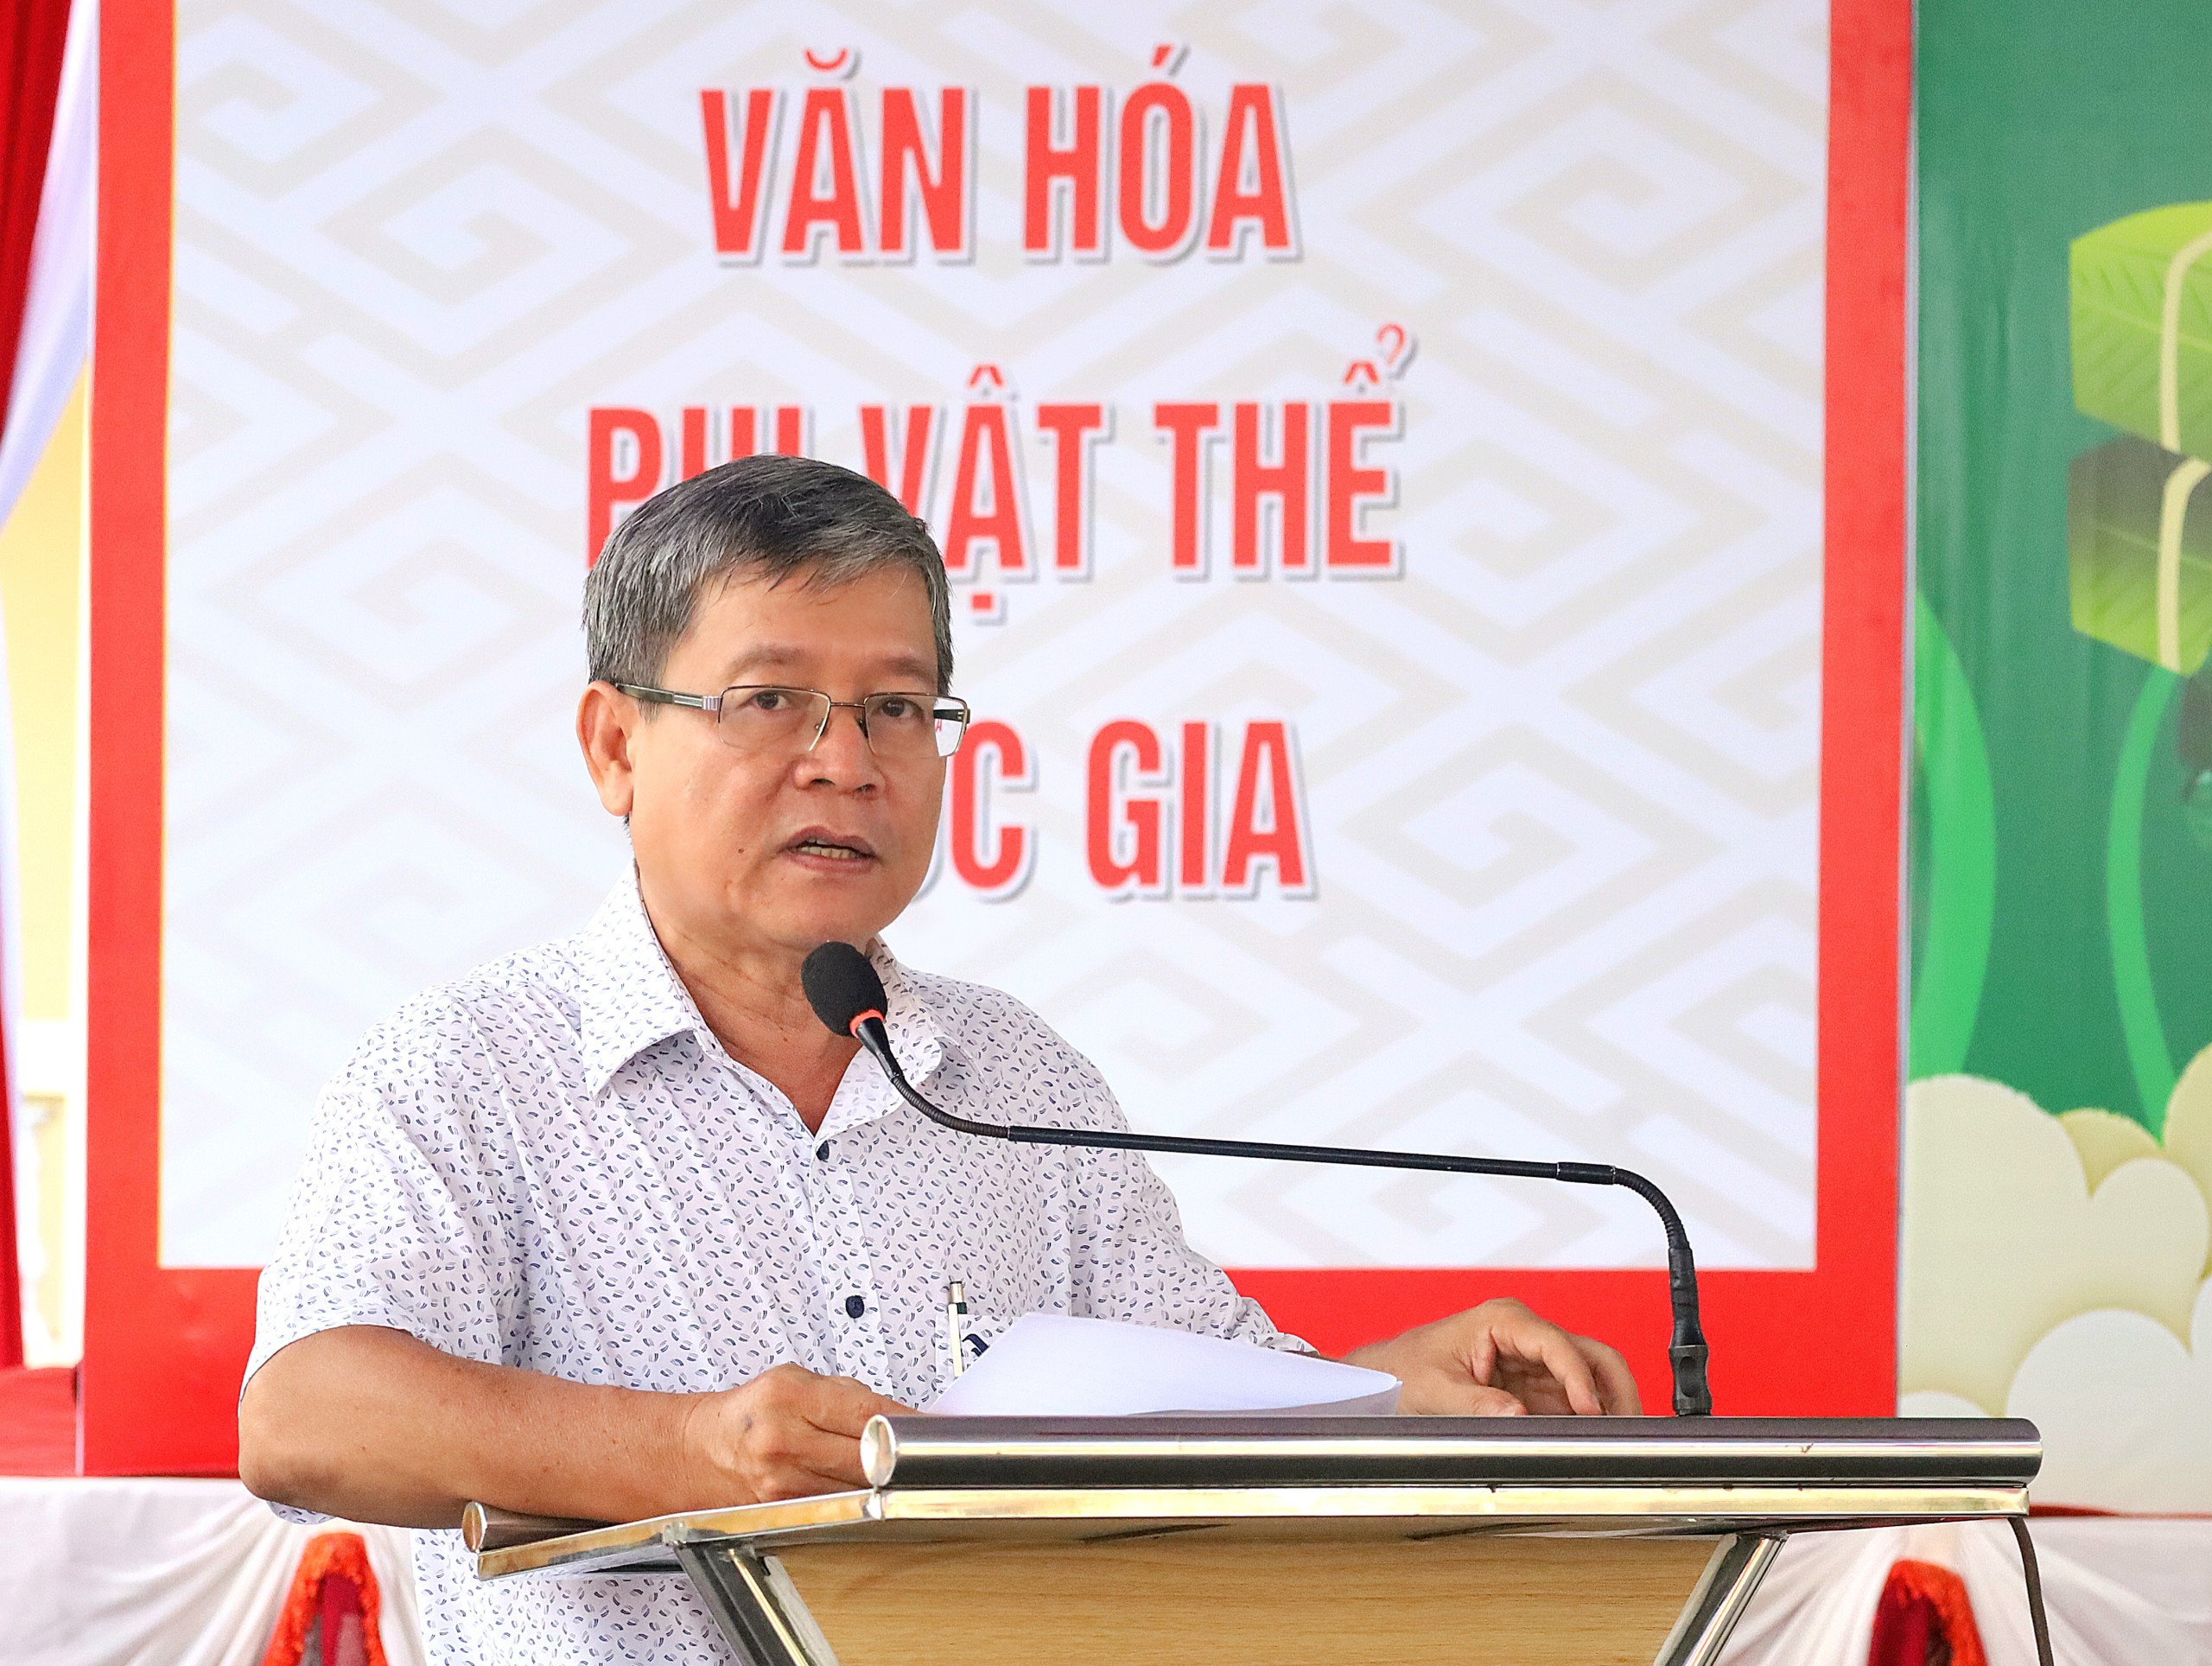 Ông Nguyễn Xuân Hoanh - Phó Giám đốc Sở Văn hóa - Thể thao và Du lịch tỉnh Vĩnh Long phát biểu tại lễ khai mạc.